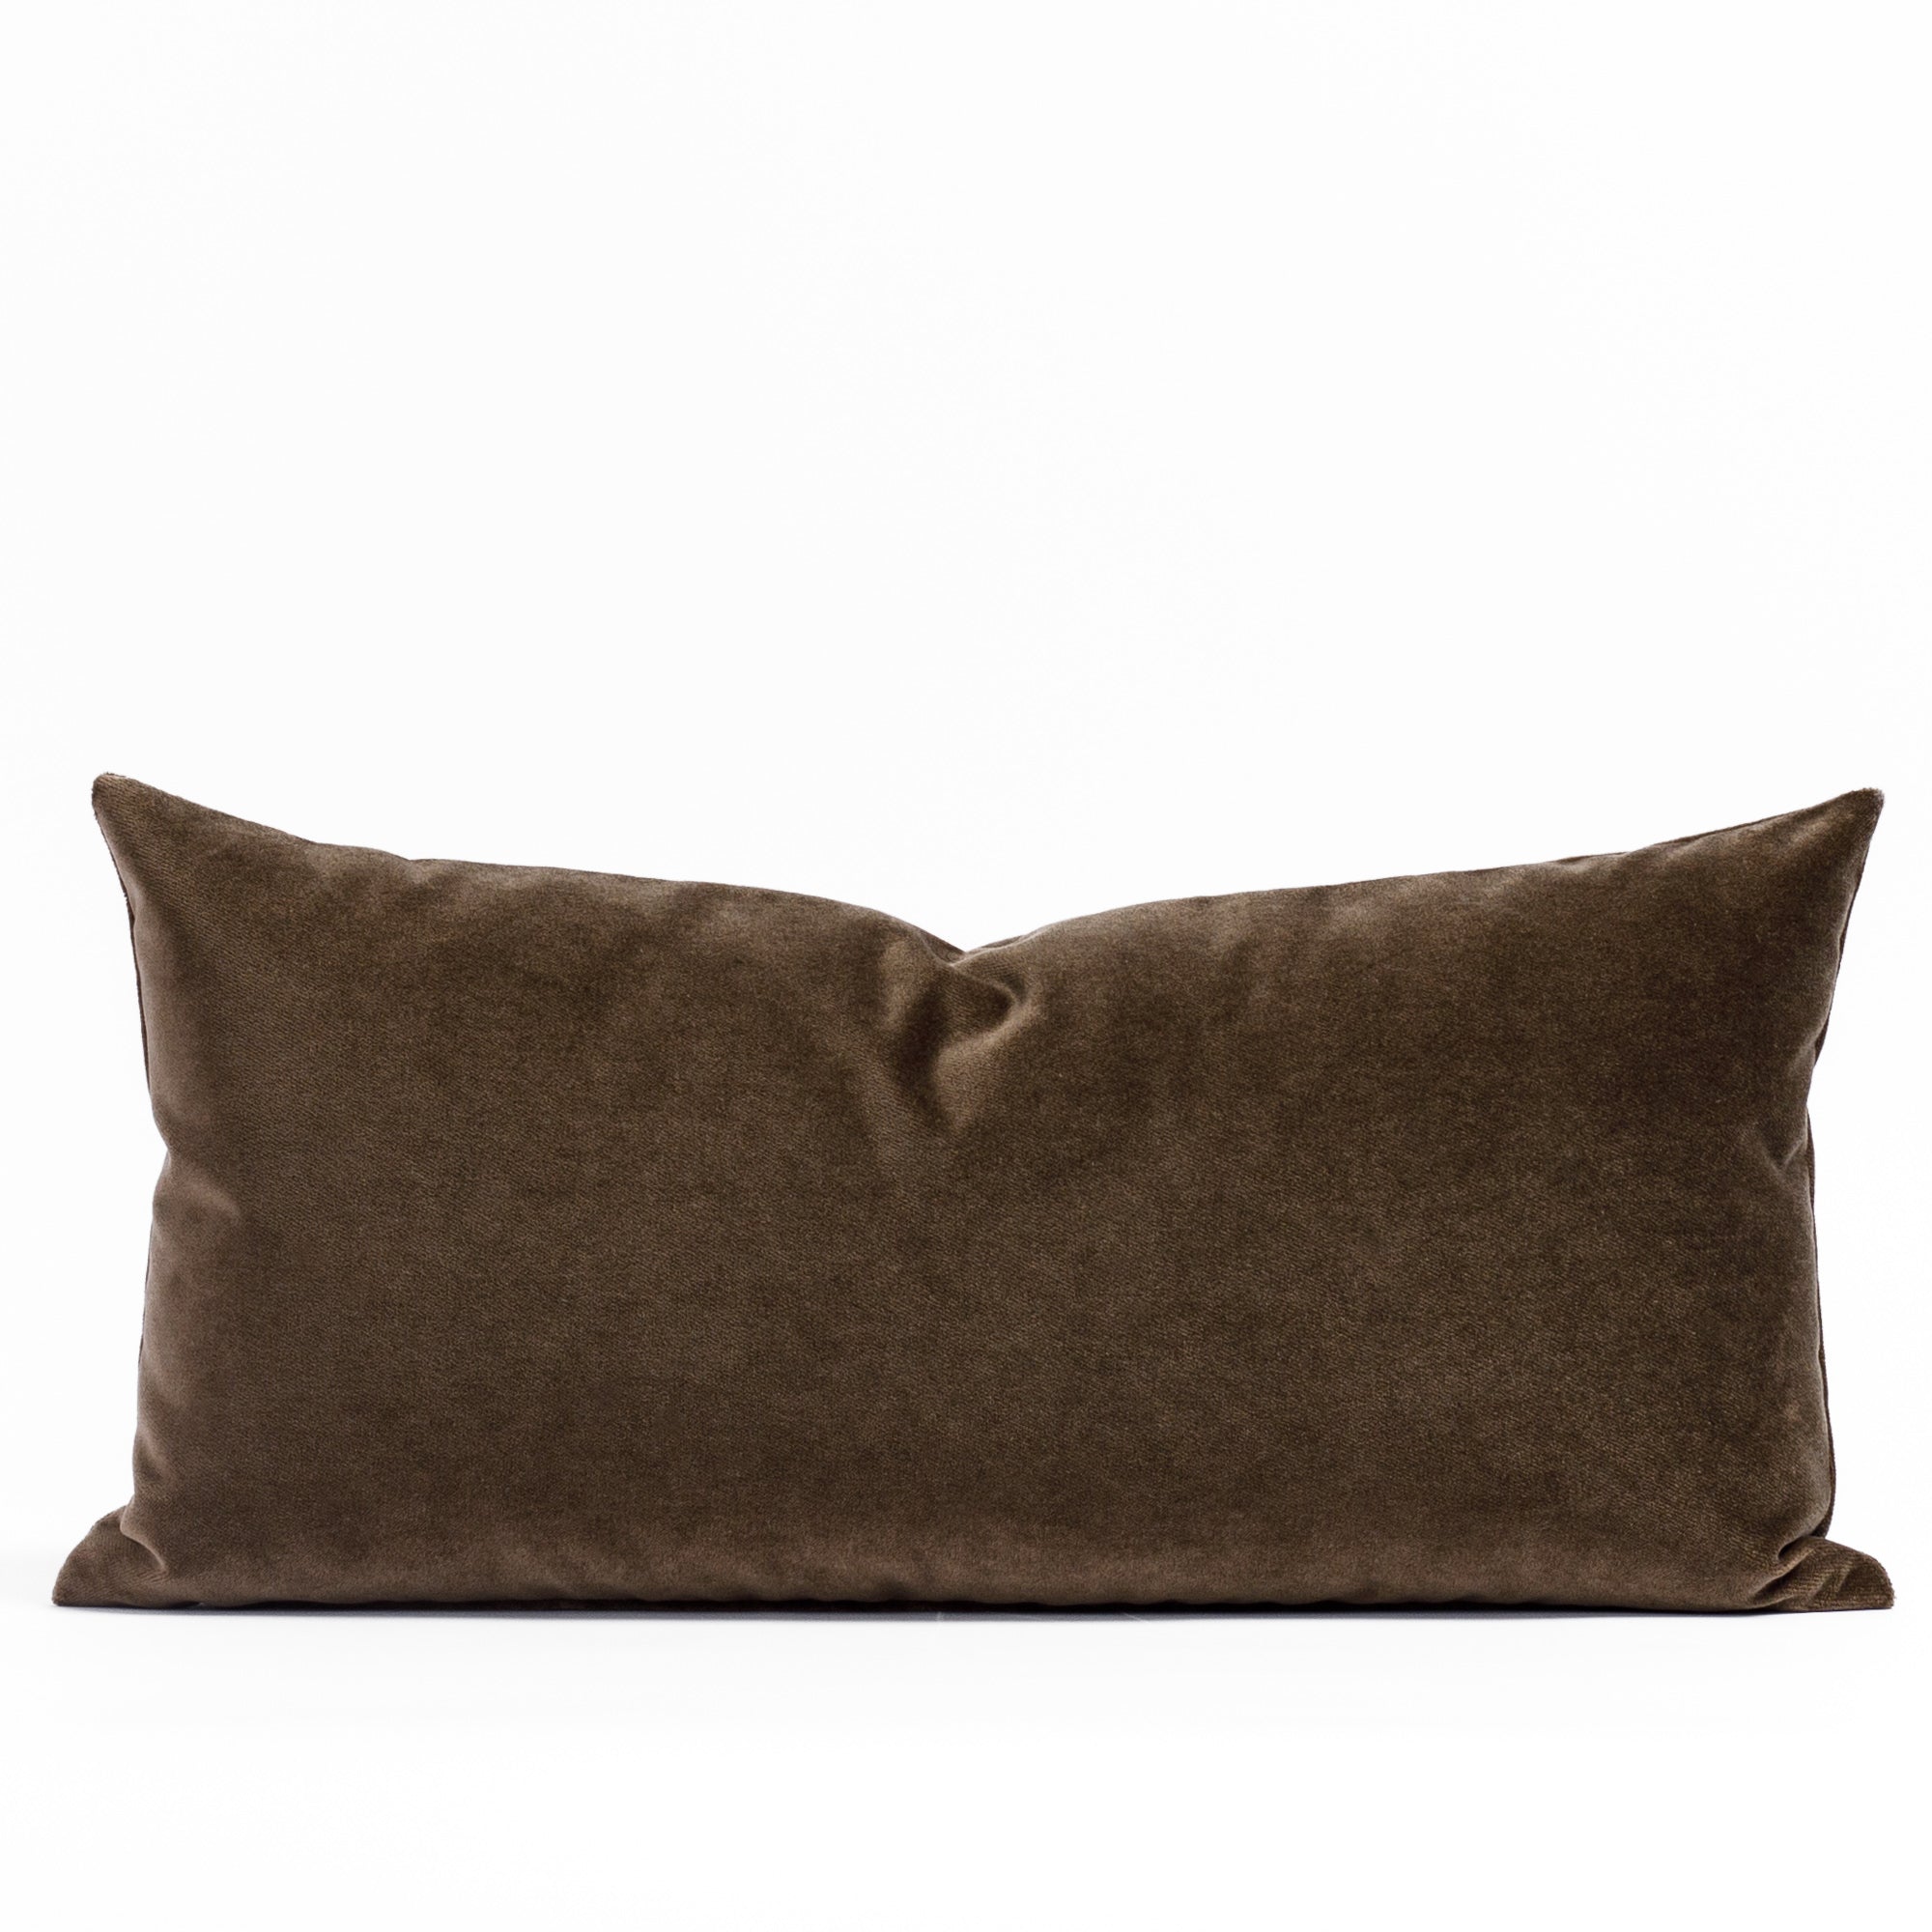 Valentina Velvet Truffle 12x24 Pillow, a rich brown lumbar throw pillow from Tonic Living